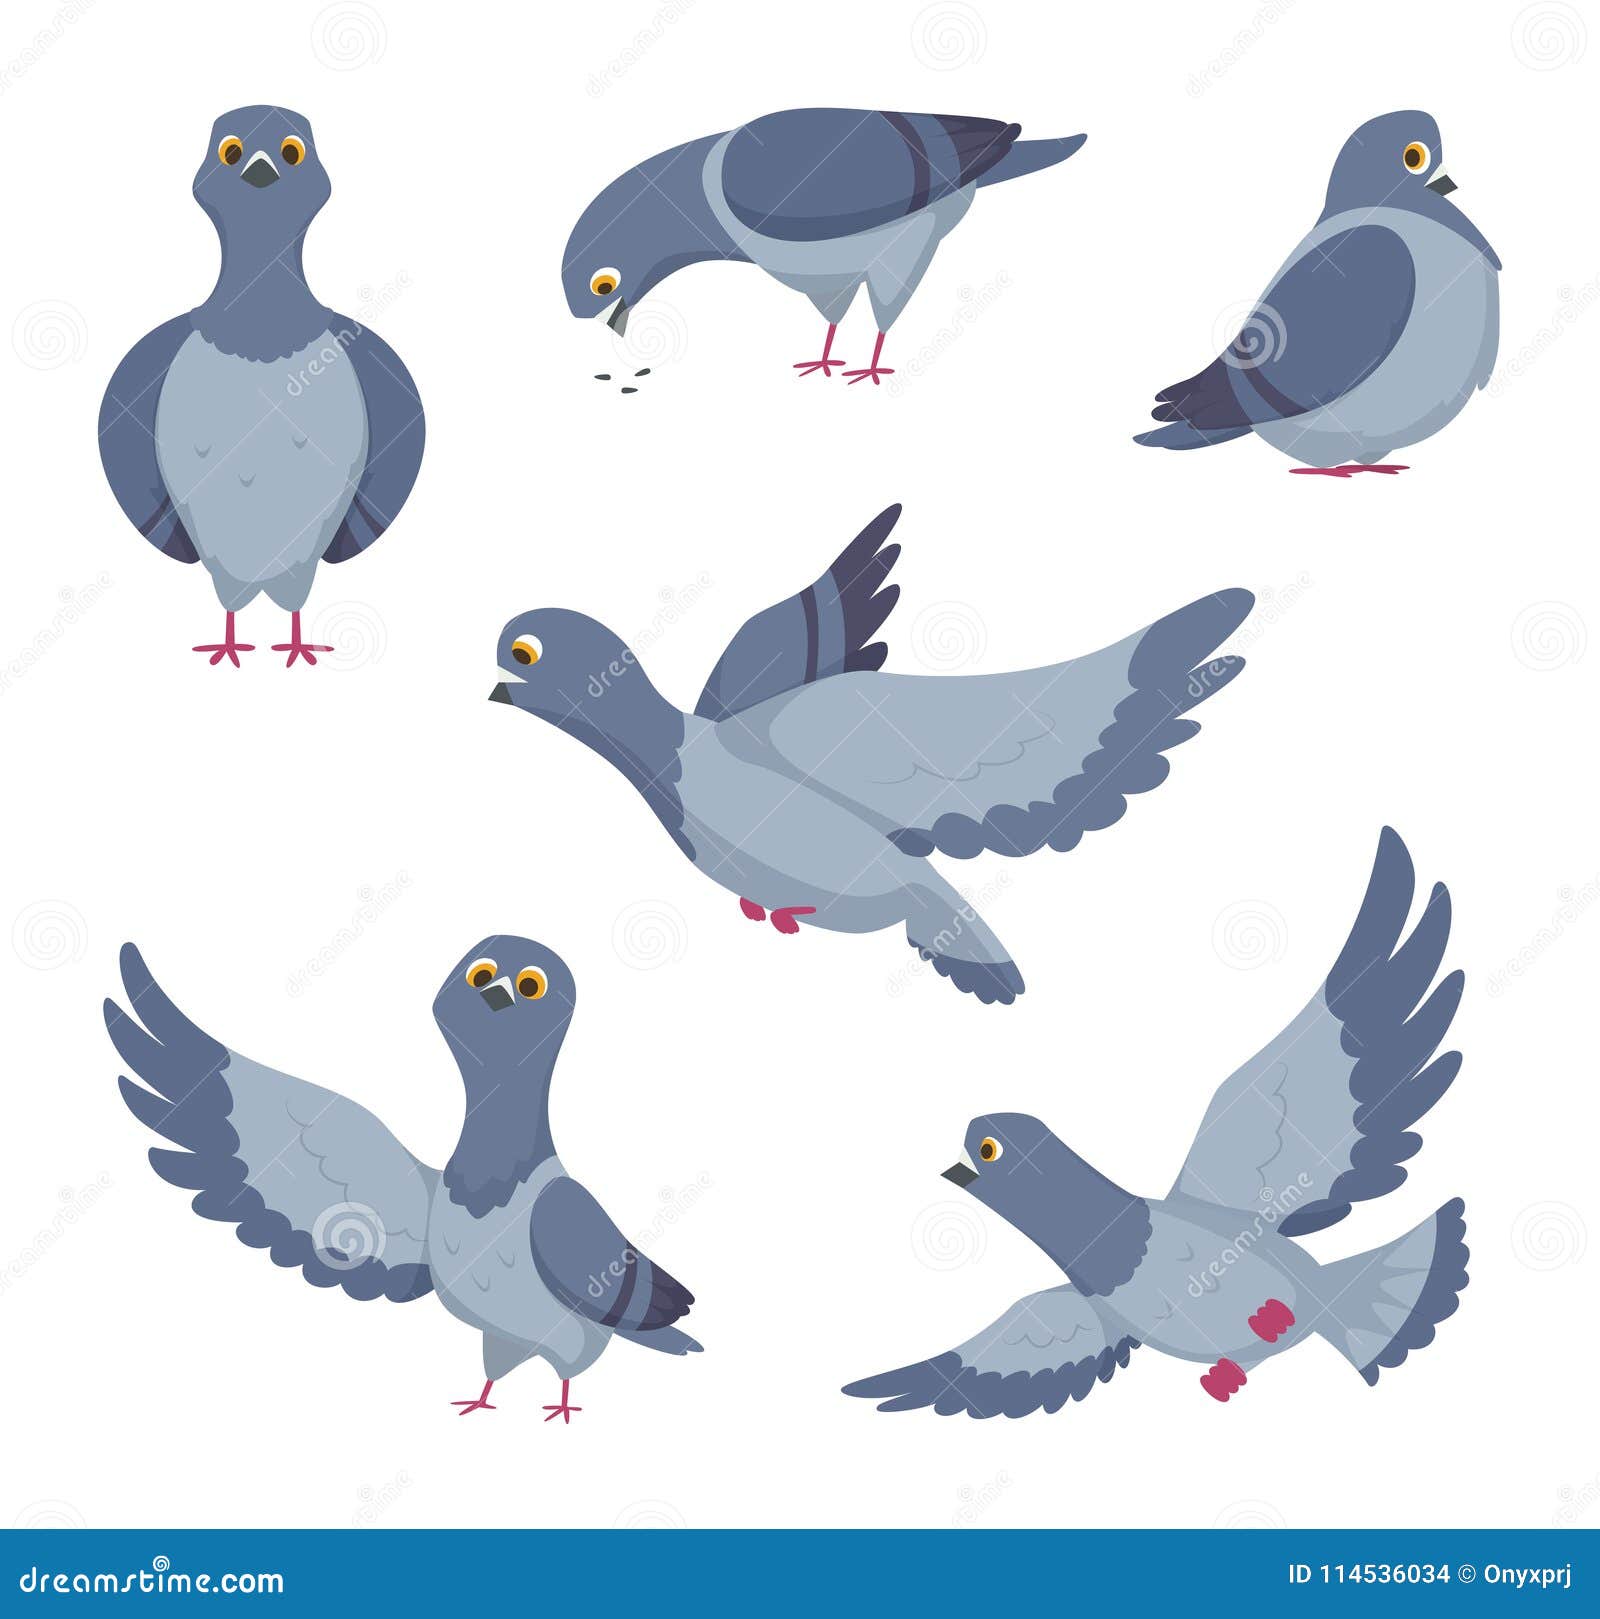 Cartoon Set of Funny Pigeons. Illustrations of Birds Stock Vector -  Illustration of flight, freedom: 114536034